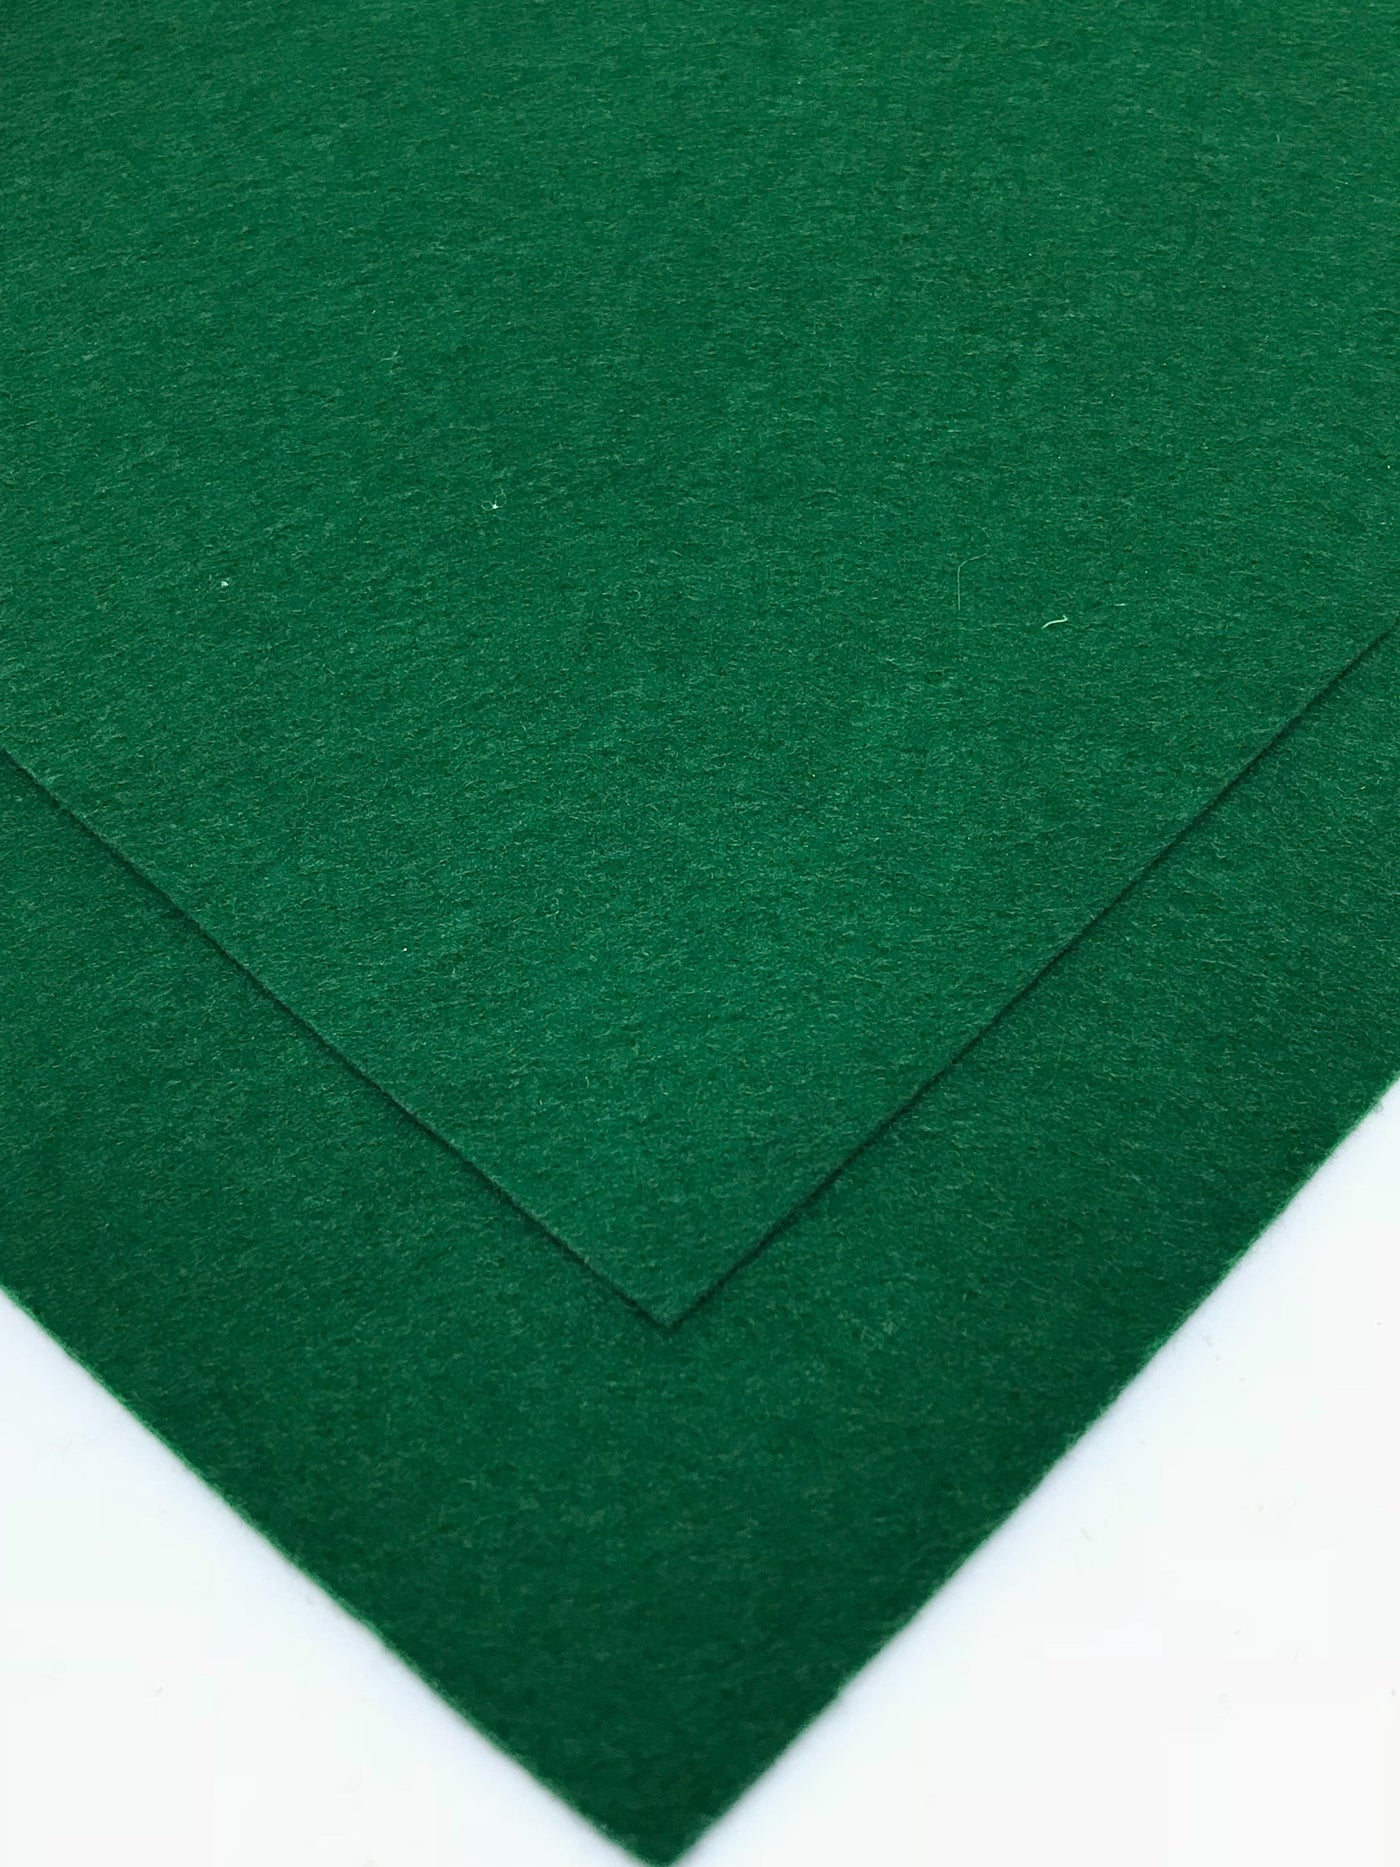 1mm Sacramental Green Merino Wool Felt A4 Sheet - No. 48